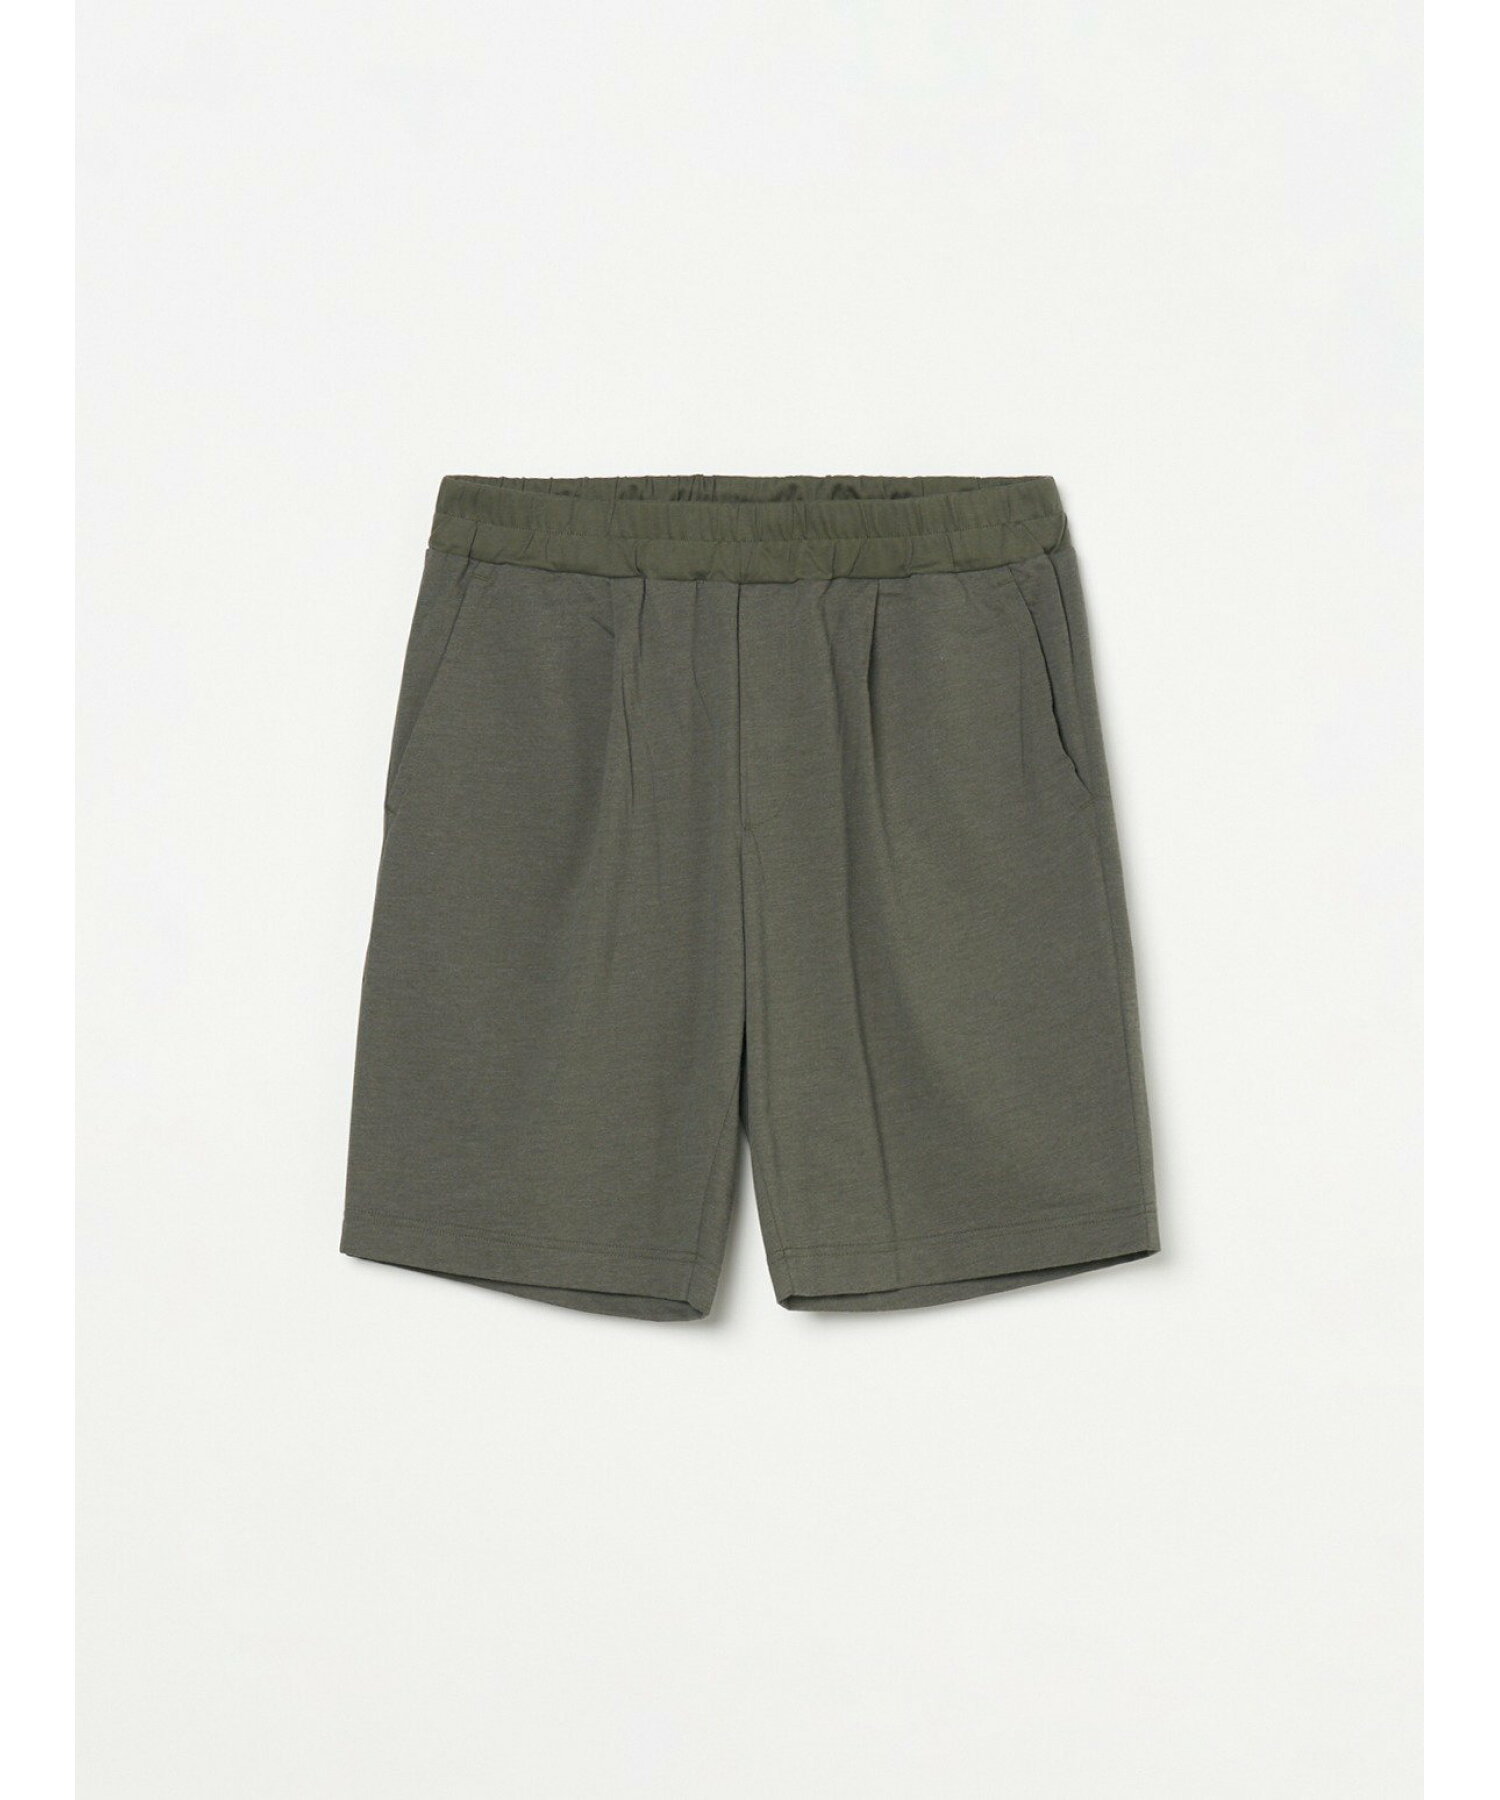 Men's powdery cotton shorts